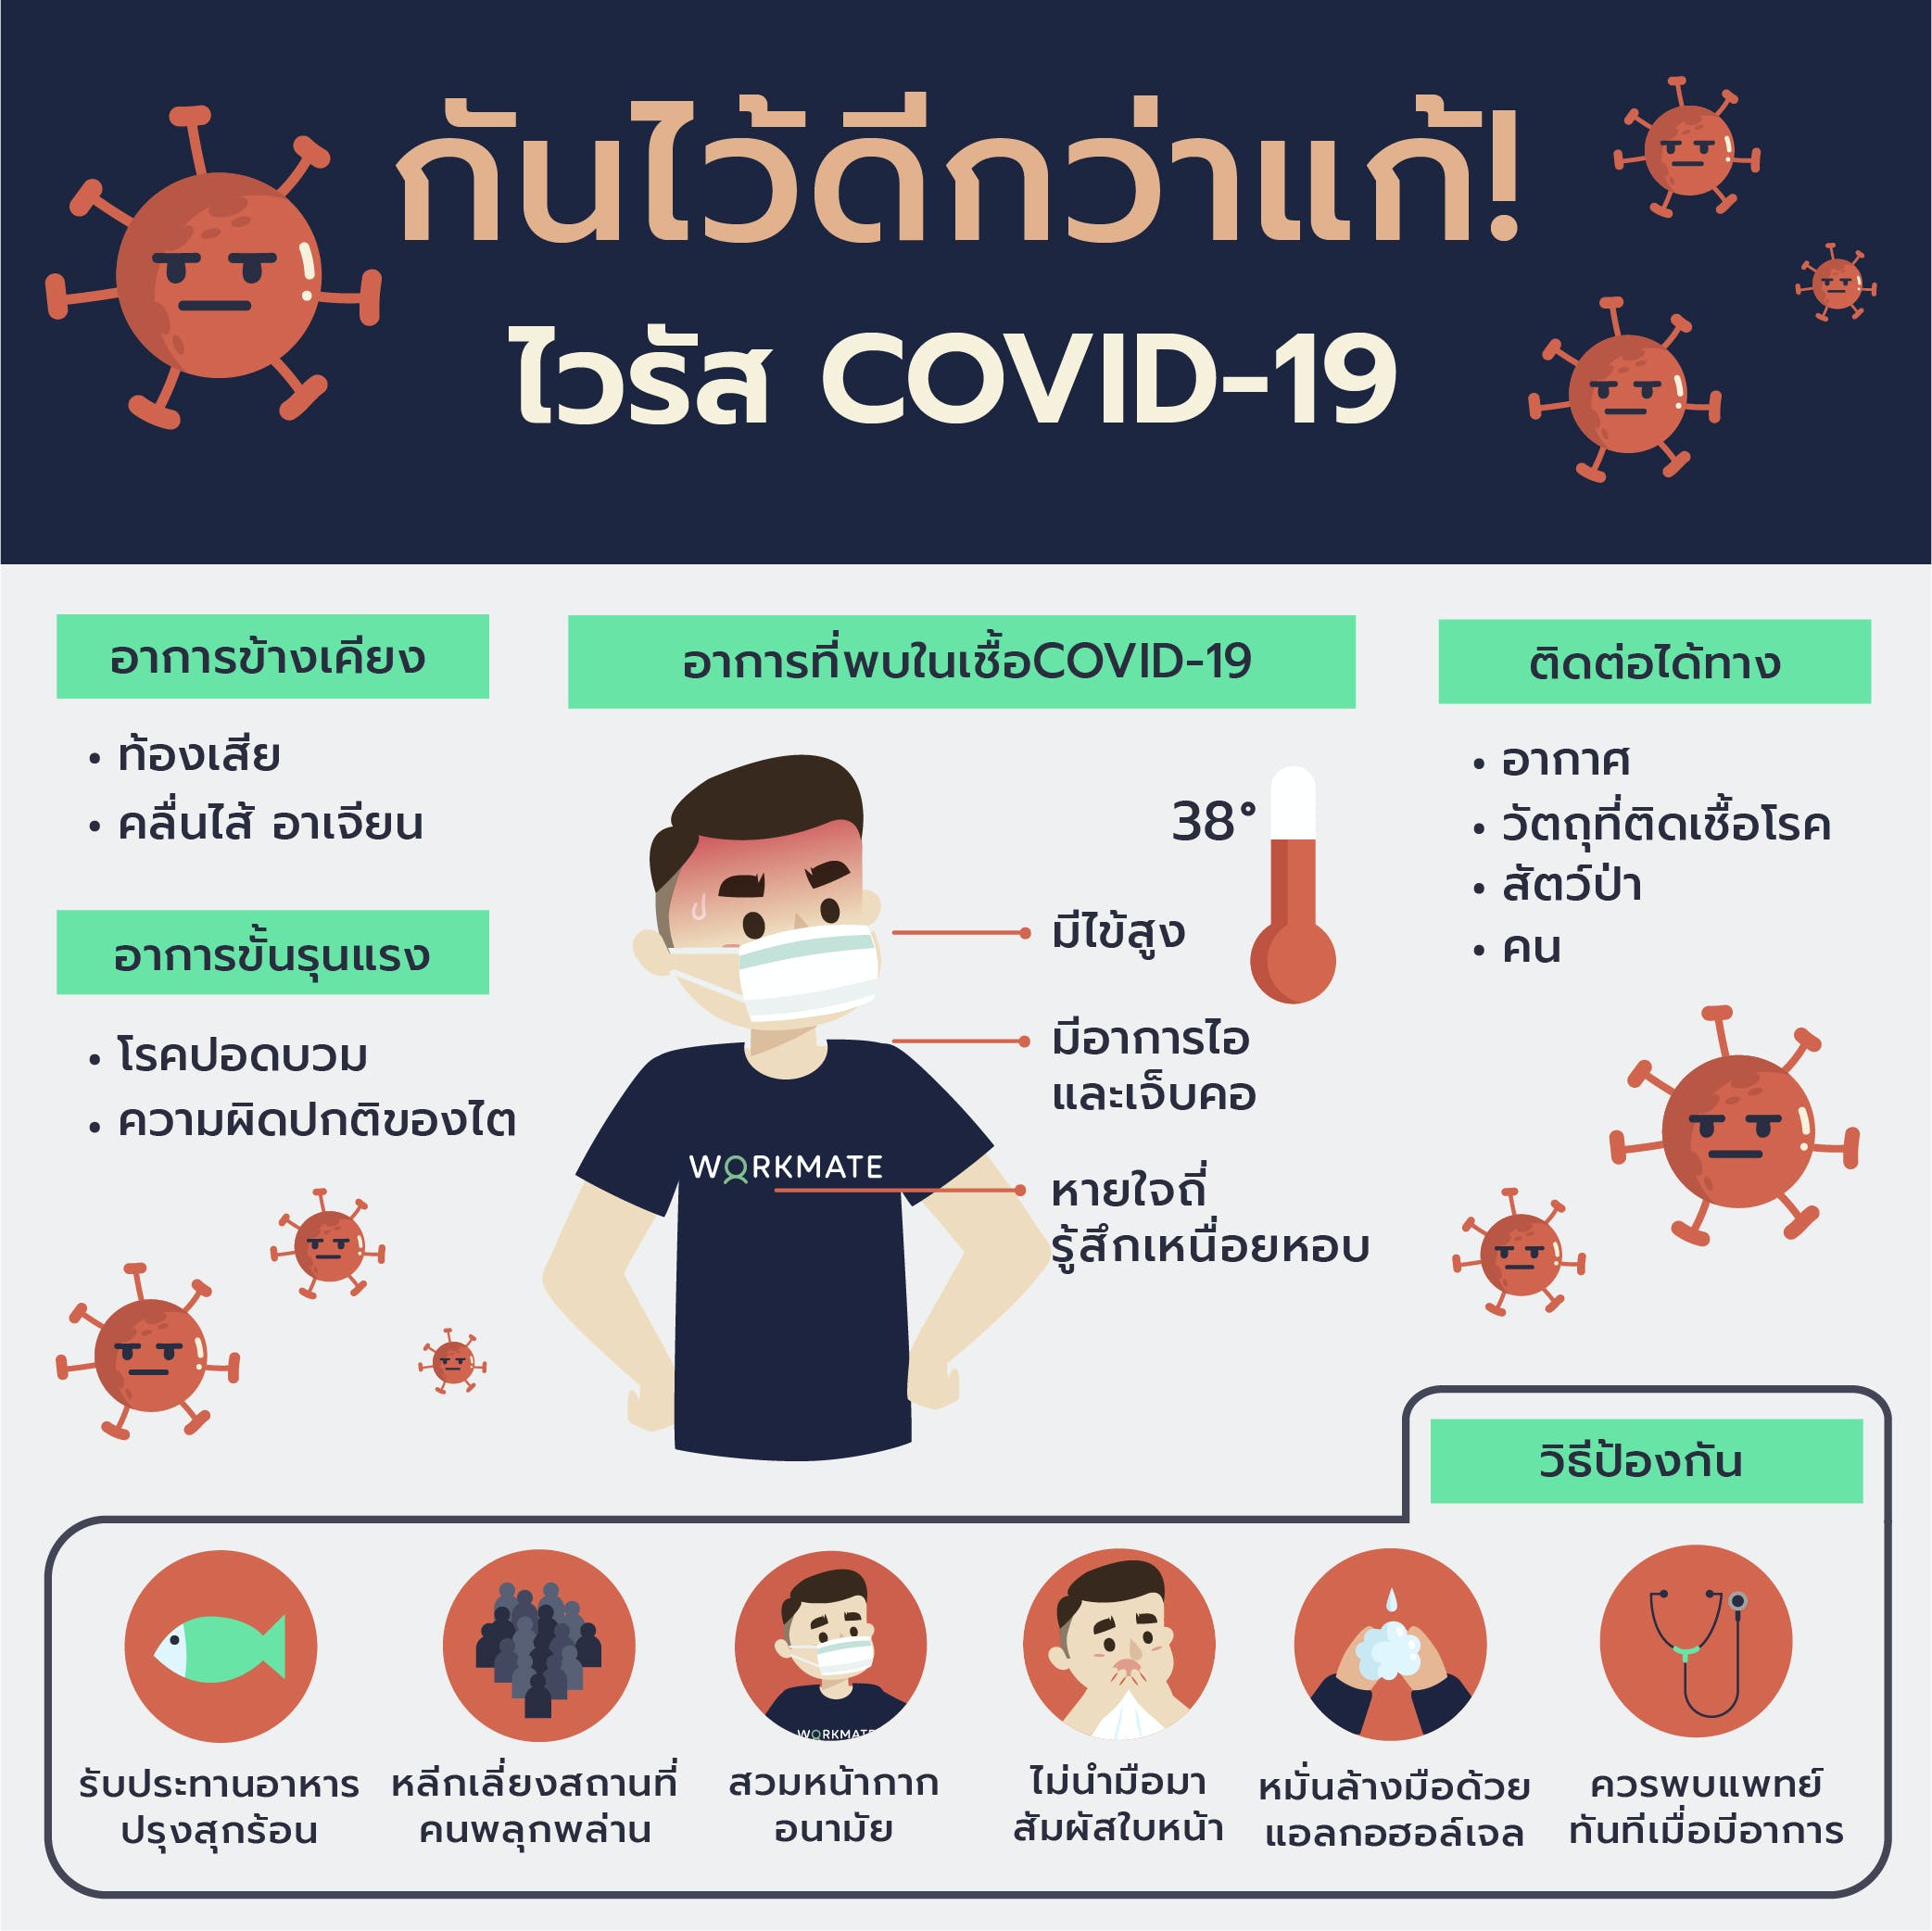 ป้องกันไว้ดีกว่าแก้ ไวรัส COVID-19